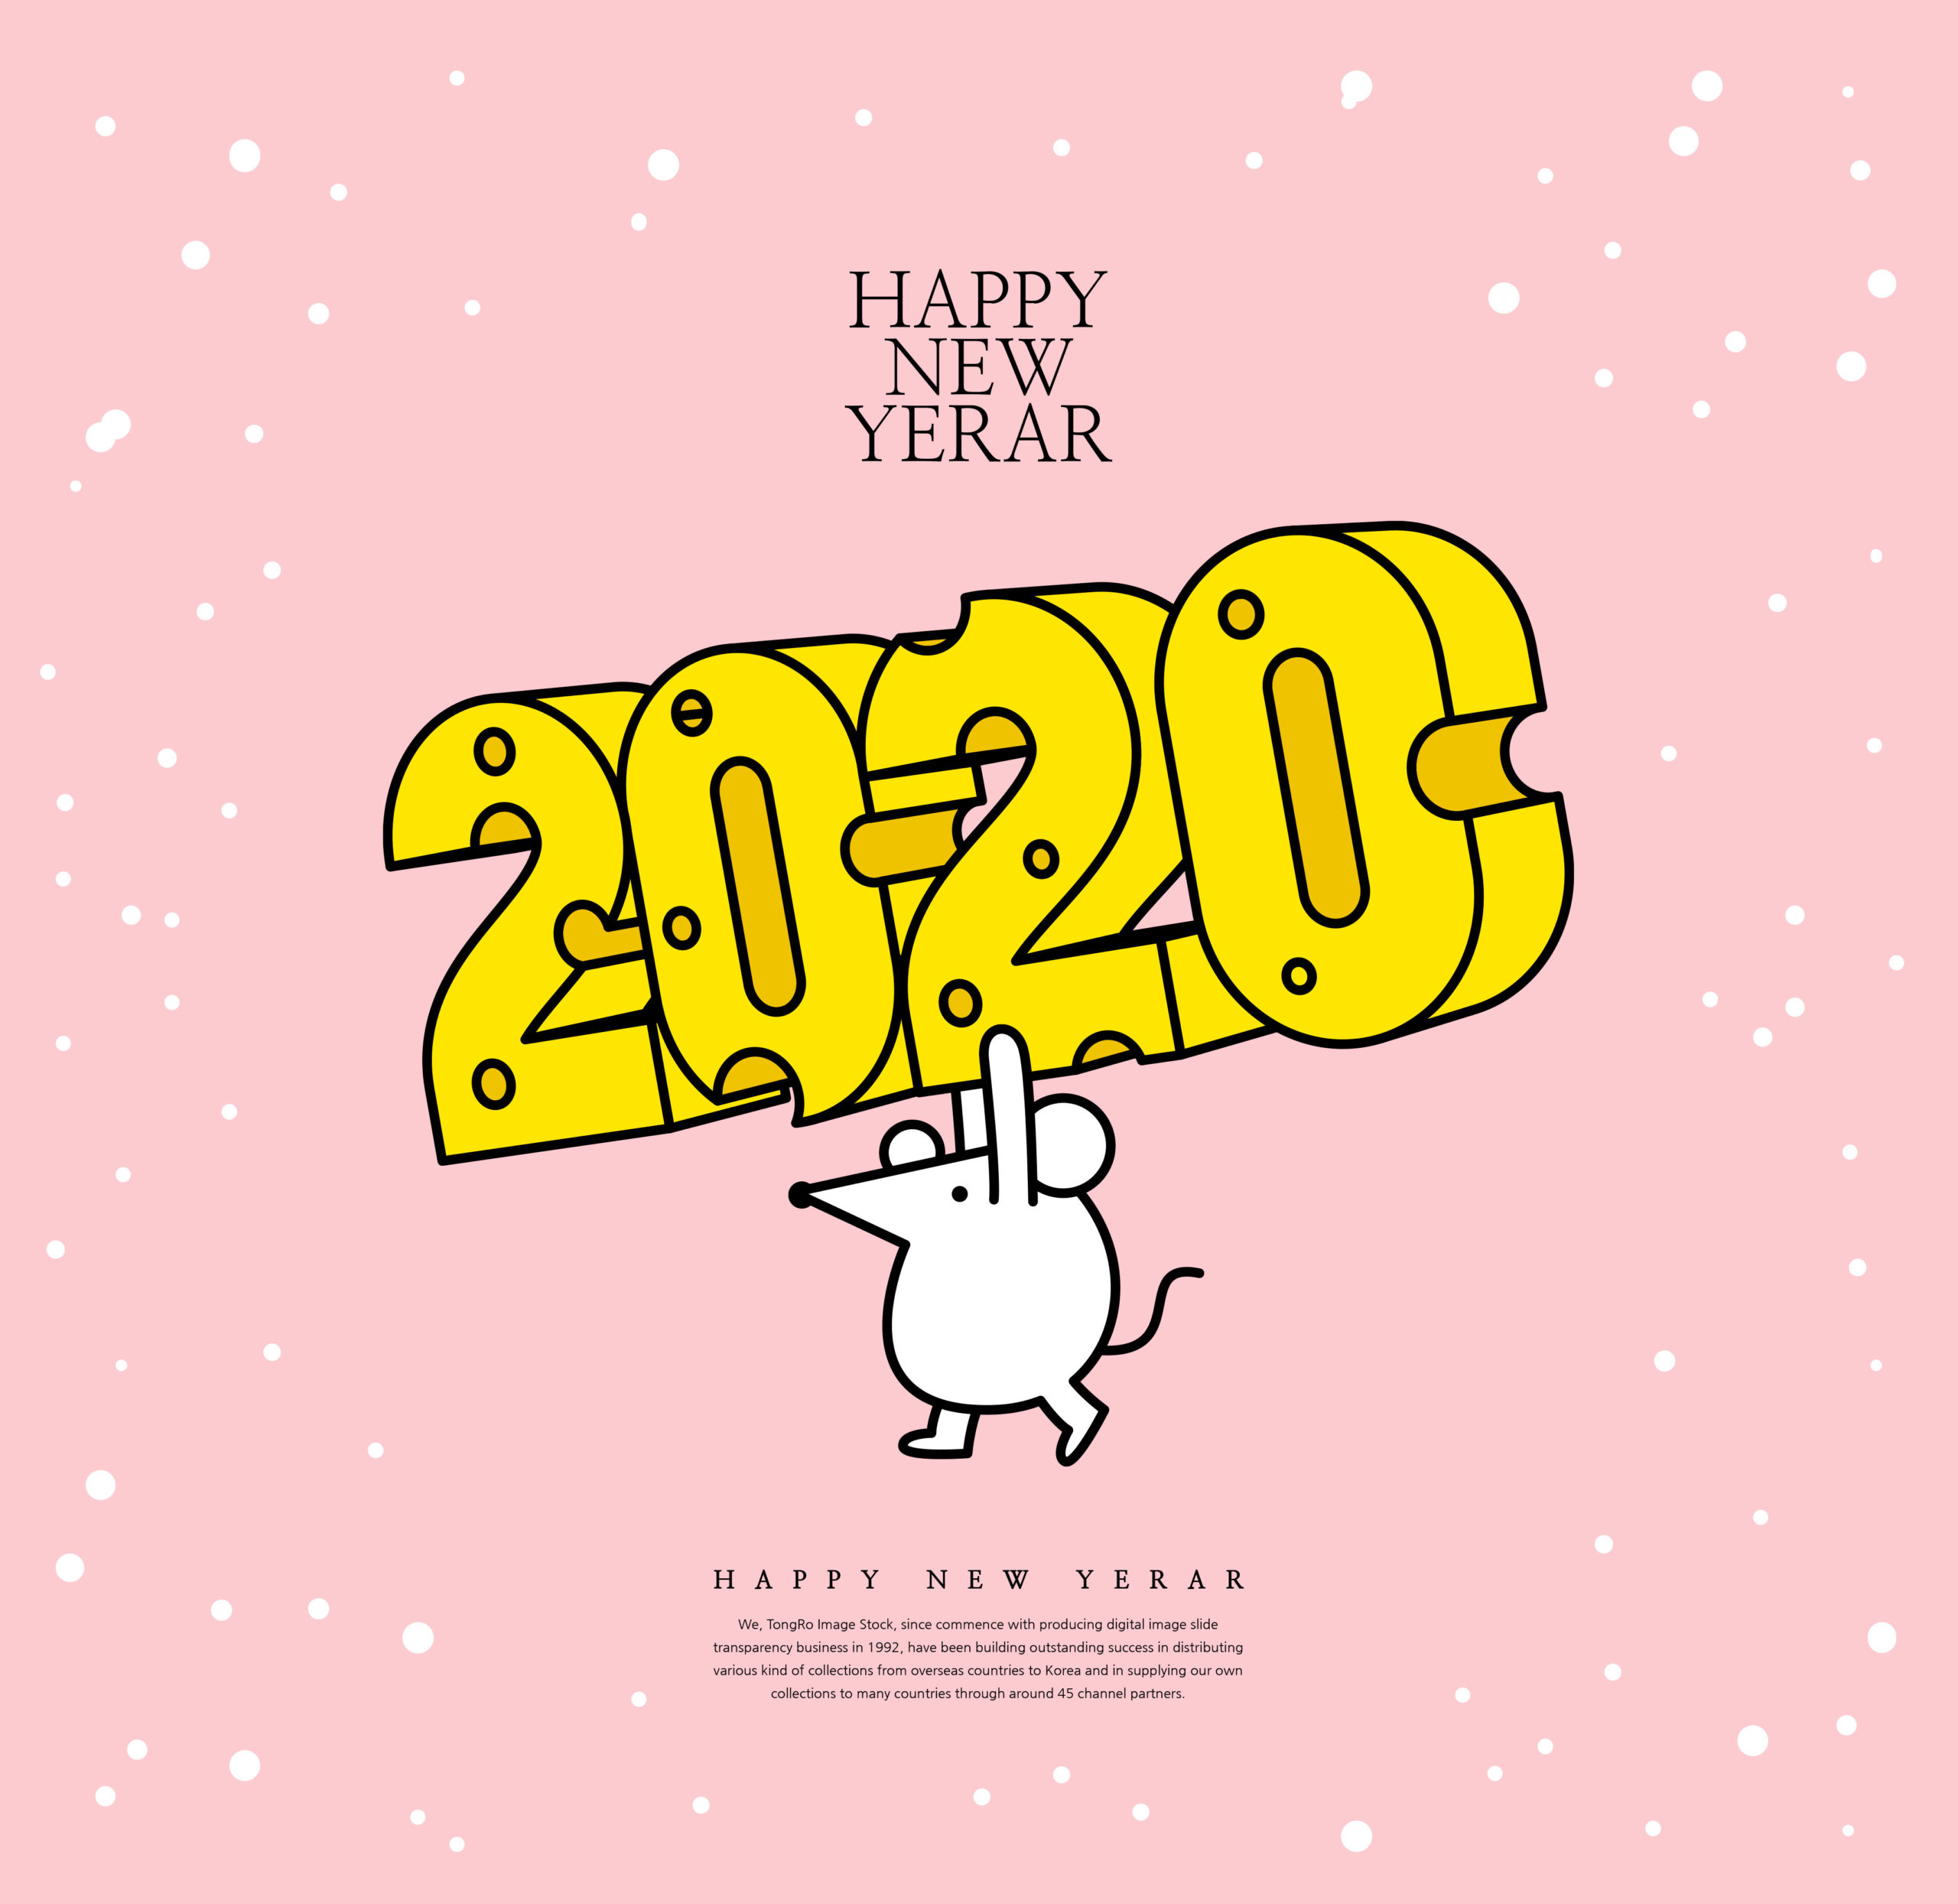 创意2020鼠年新年快乐主题海报模板套装[PSD]插图(4)